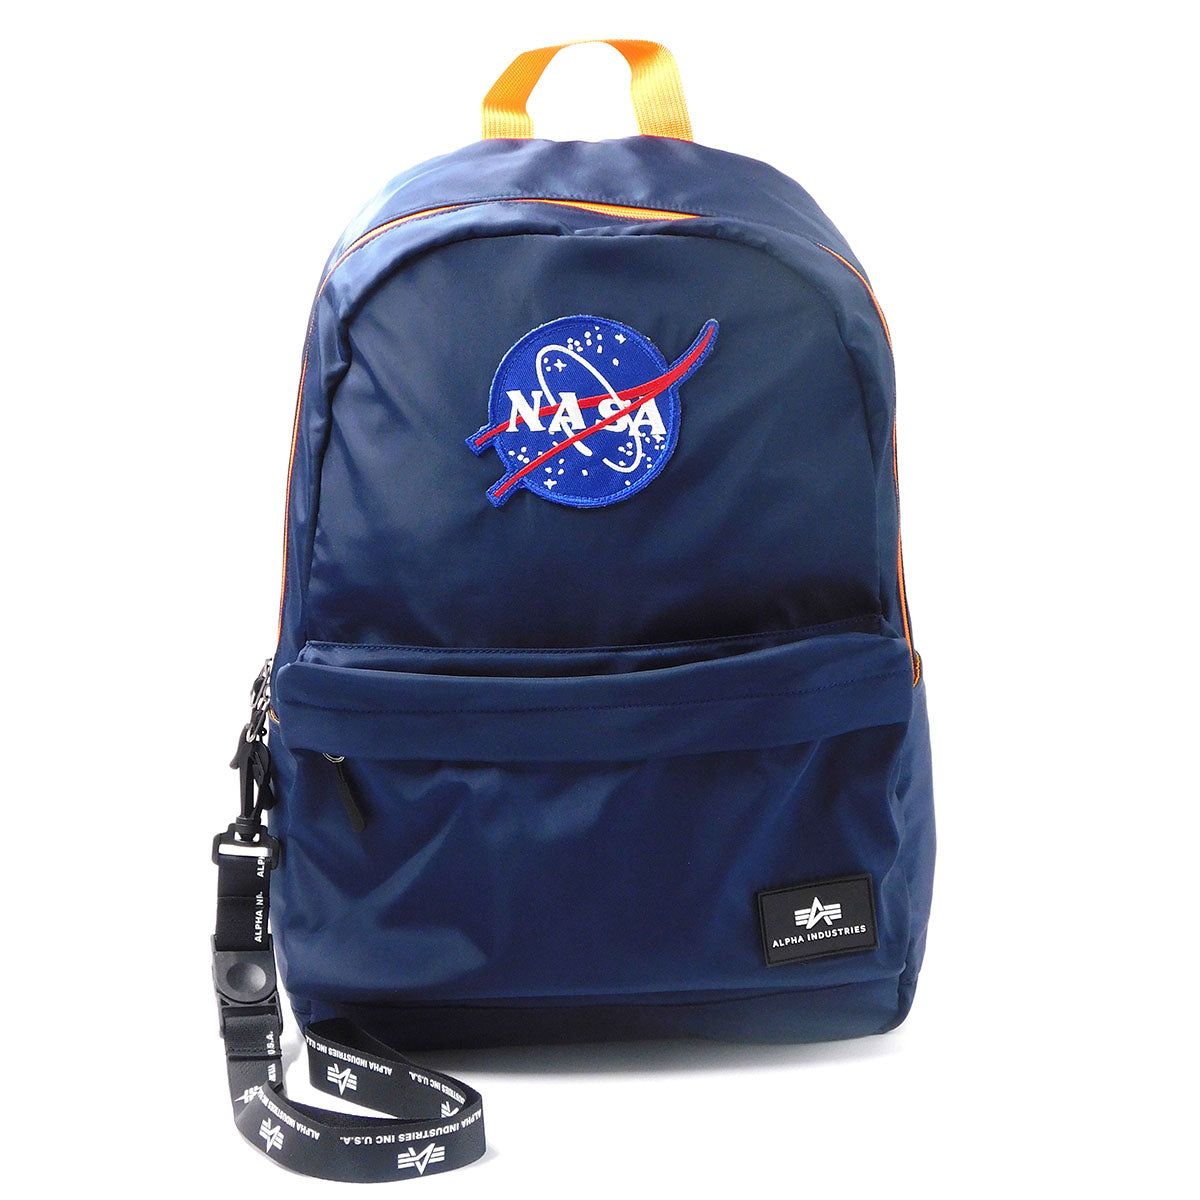 Voyager NASA Backpack